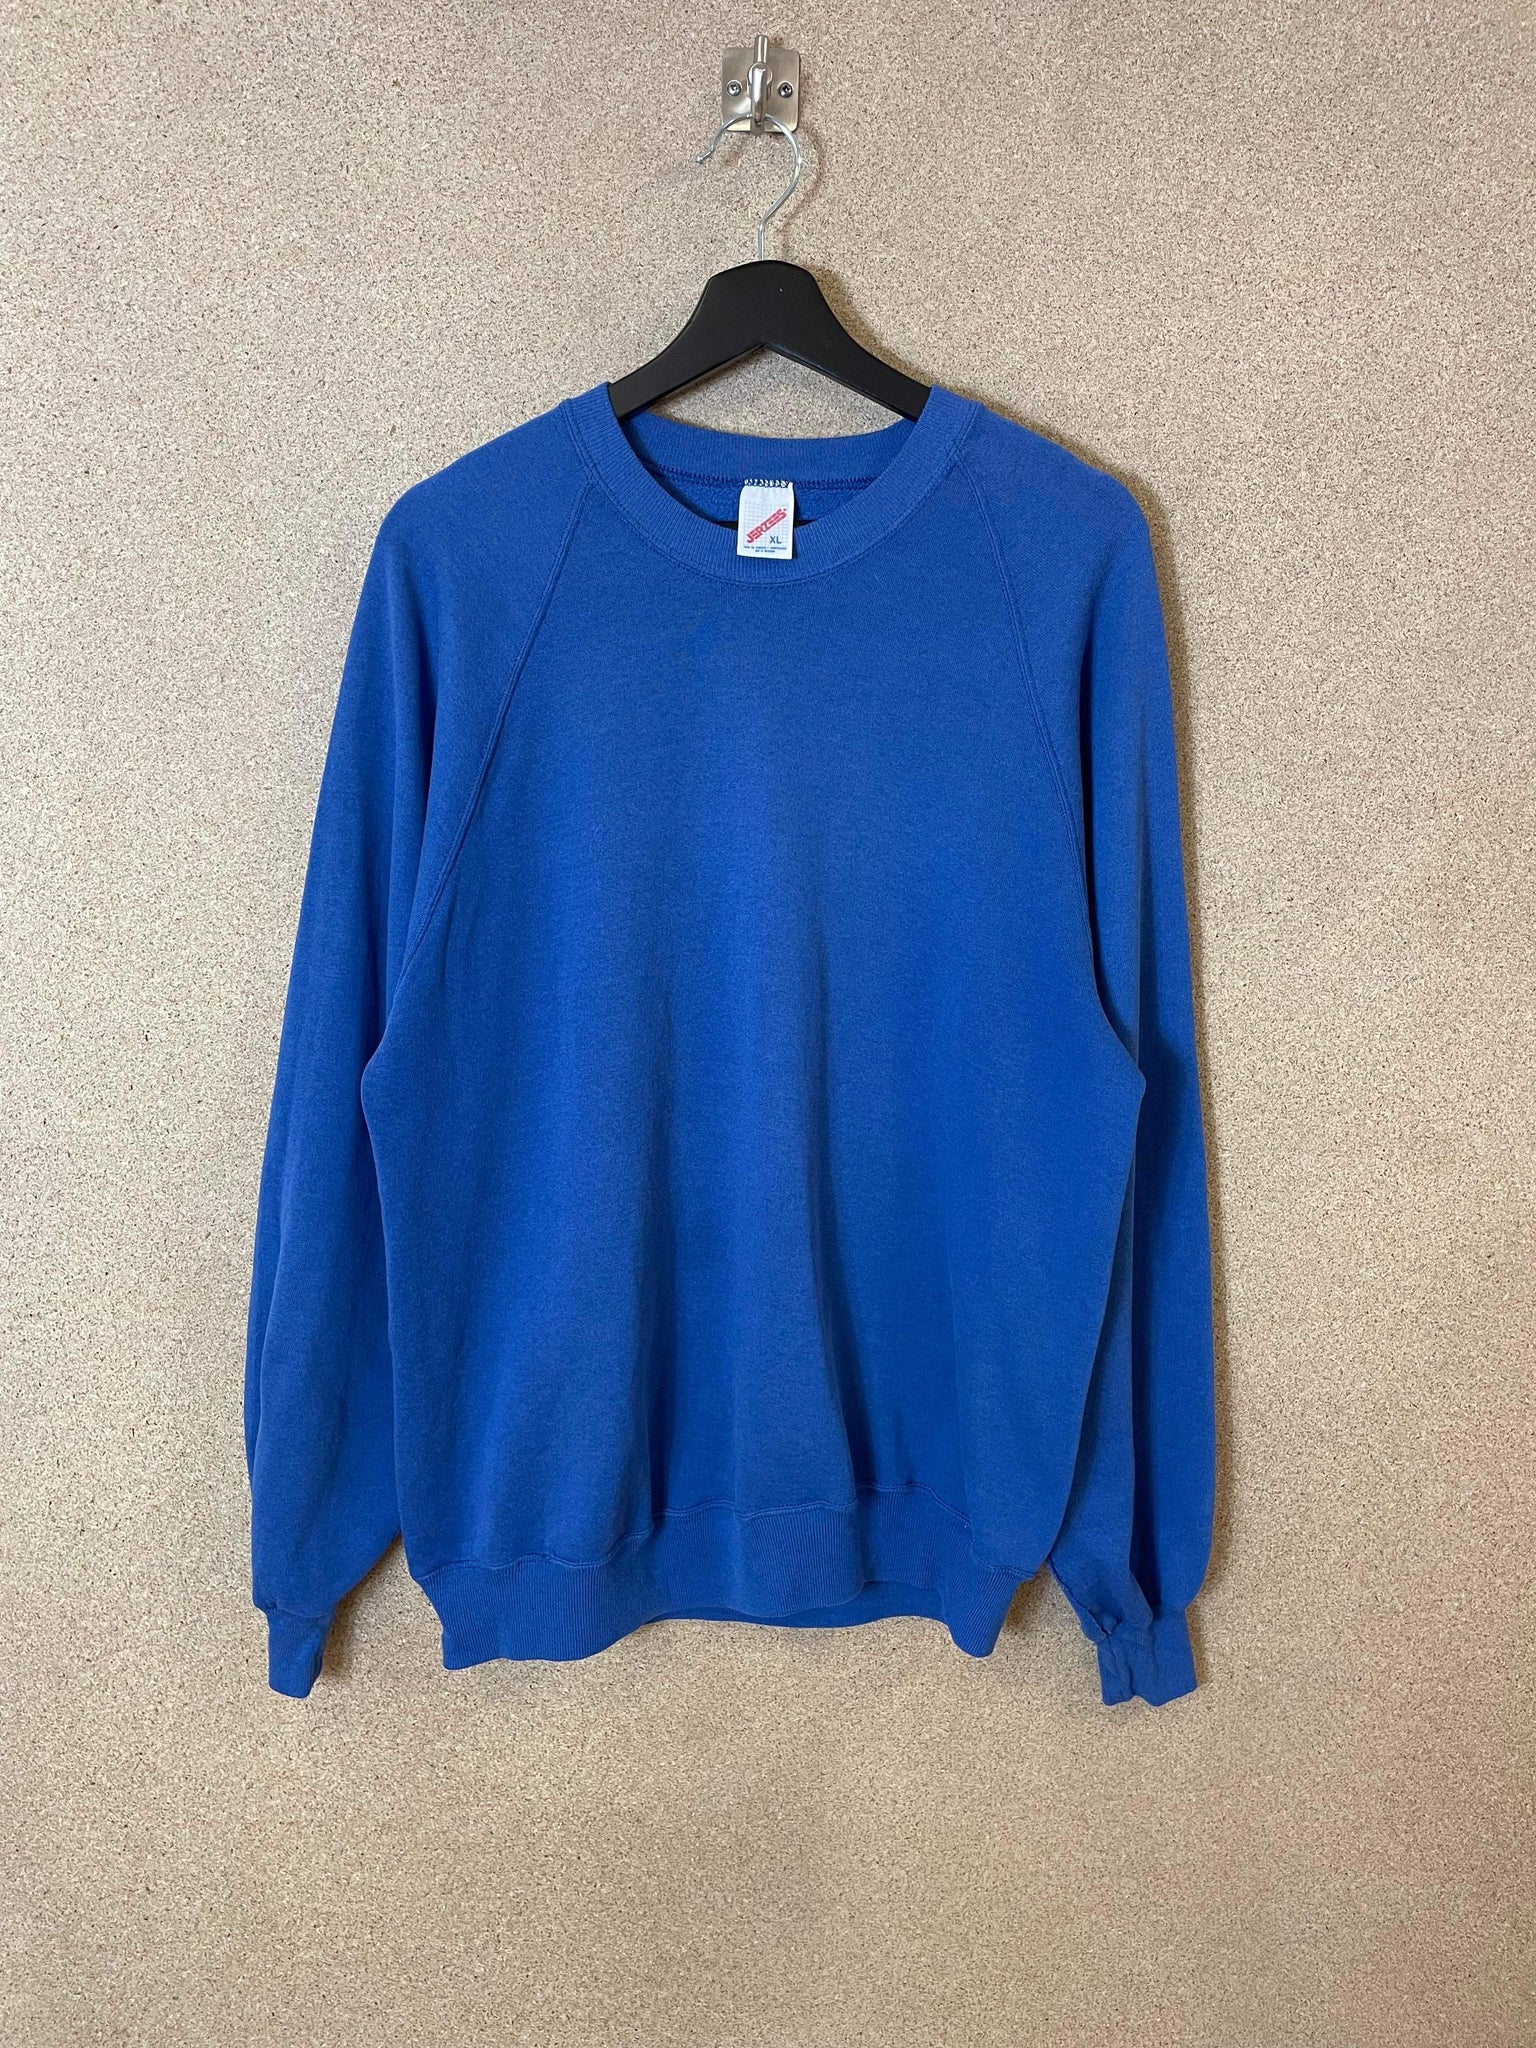 Vintage Jerzees Clear Blue Blank 90s Sweatshirt- XL